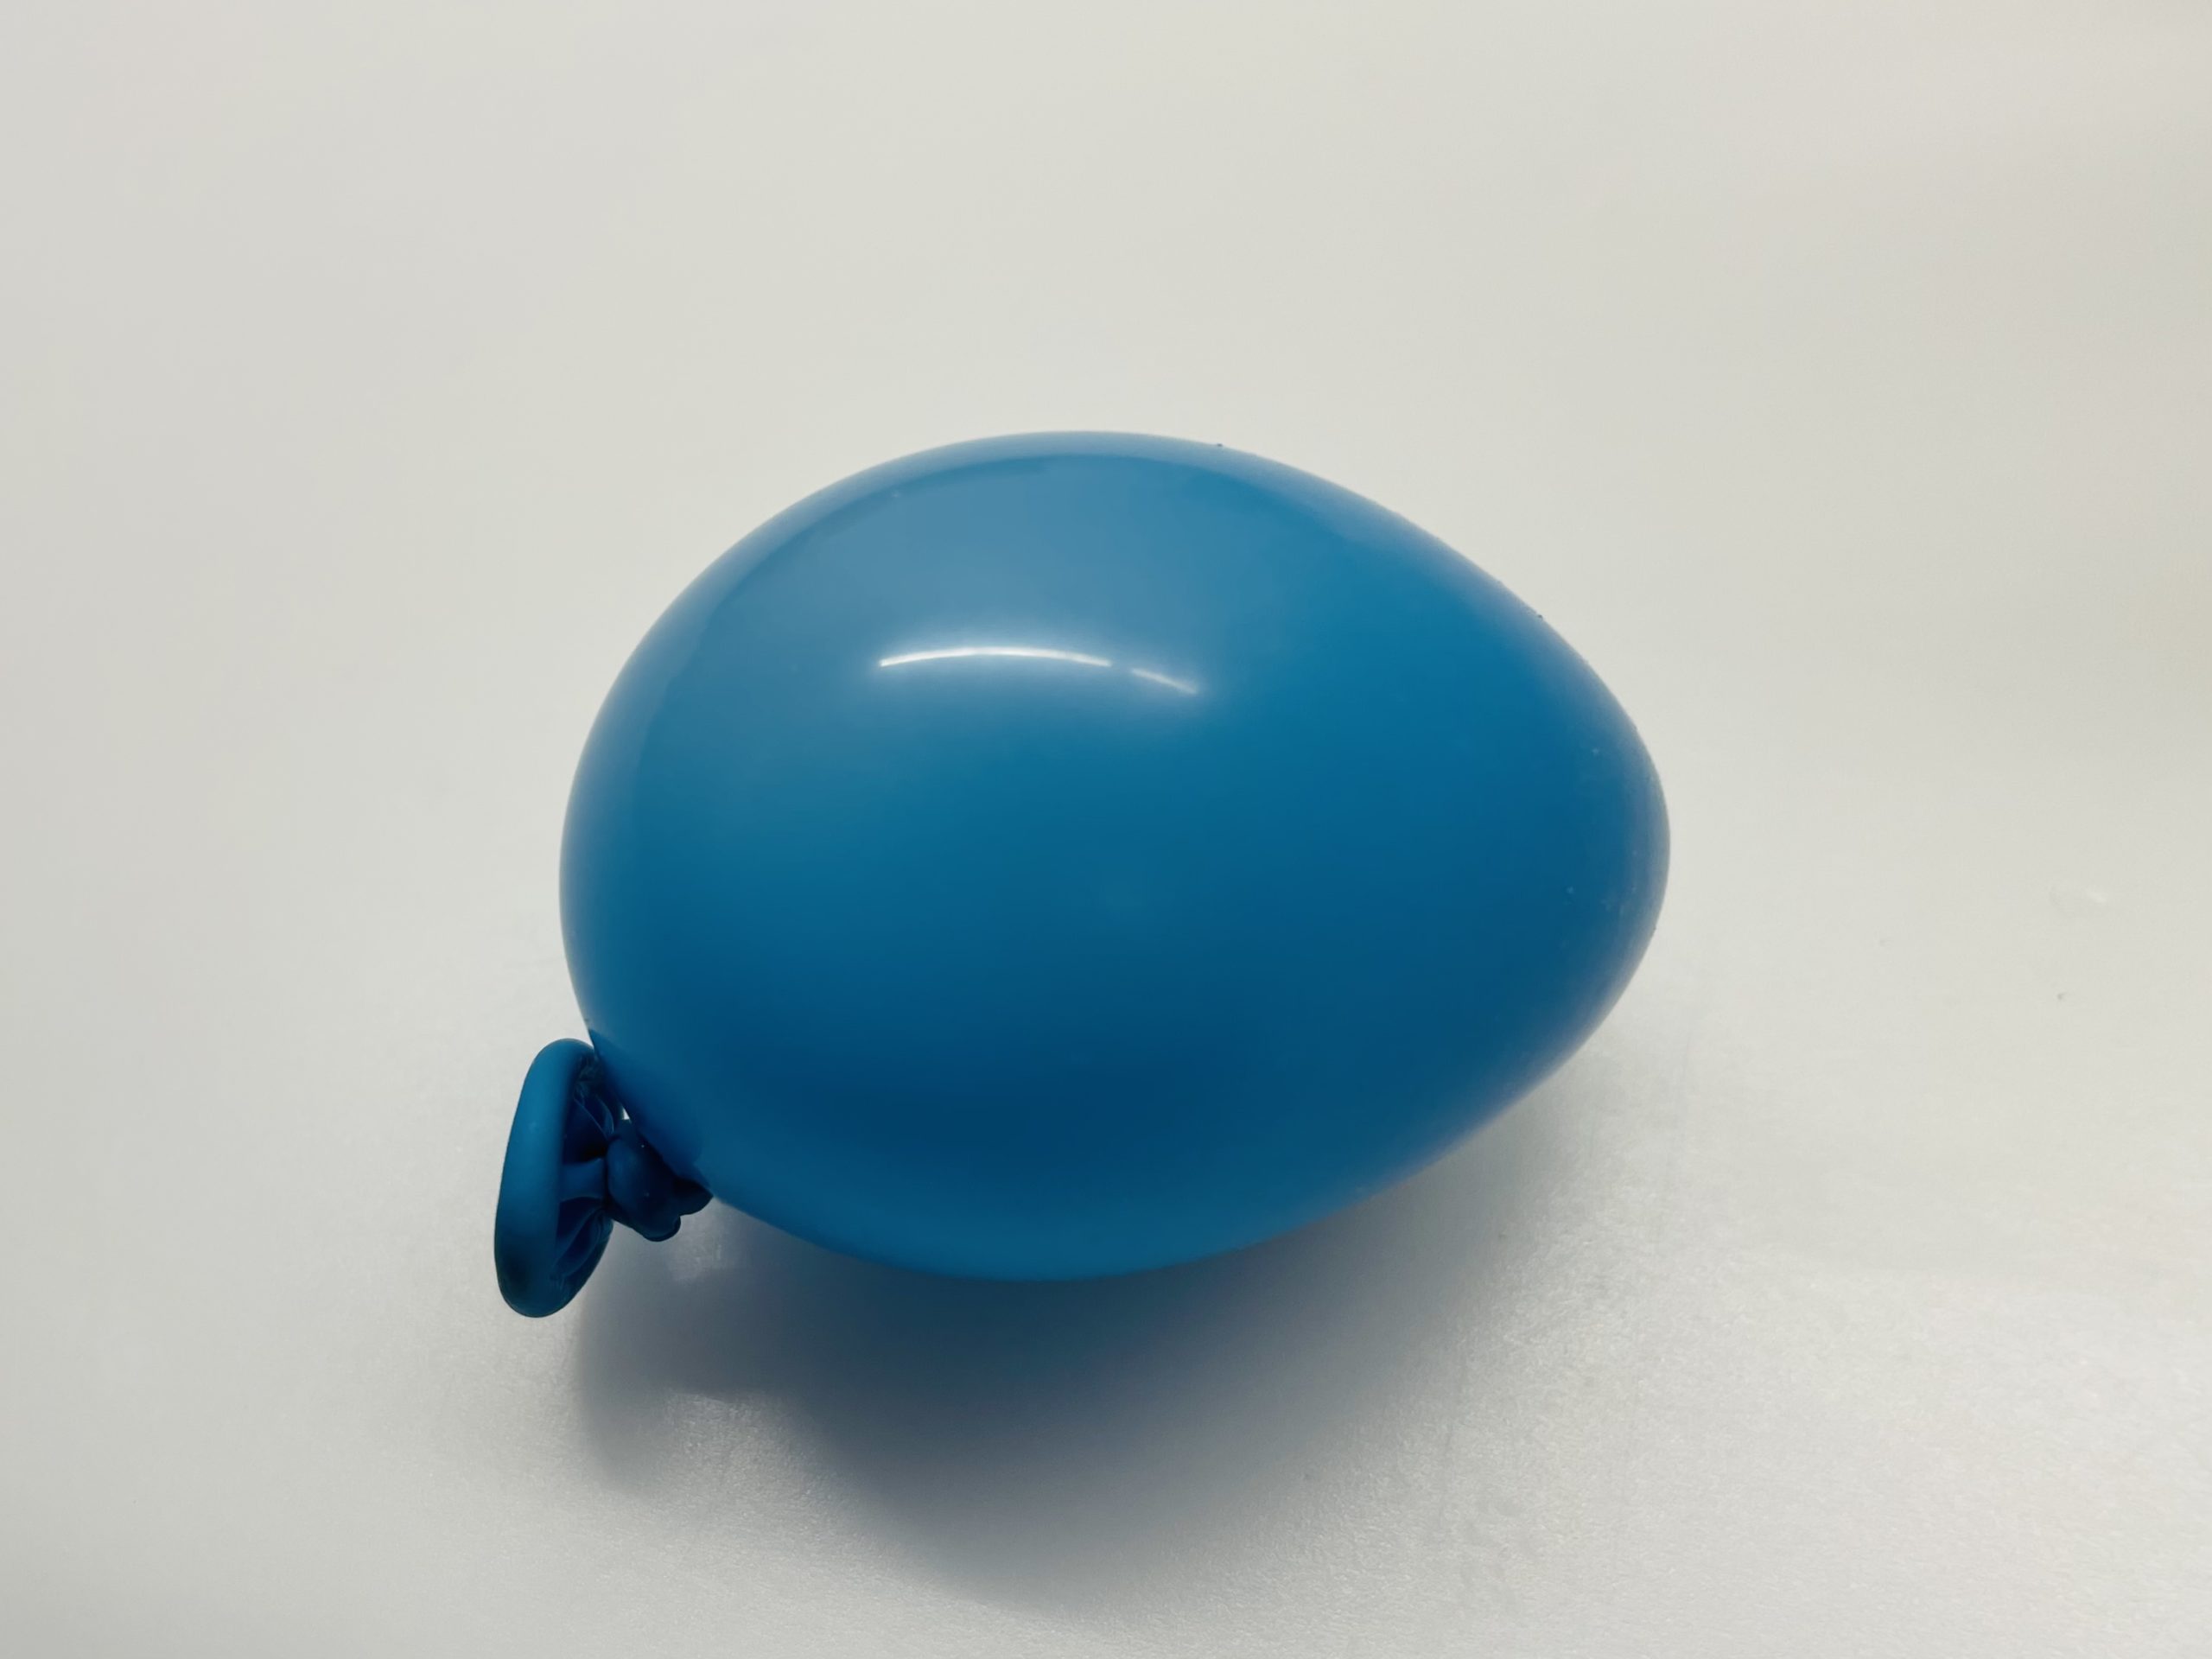 Bild zum Schritt 4 für das Bastel- und DIY-Abenteuer für Kinder: 'Dann blast ihr den Ballon auf und knotet ihn zu.'